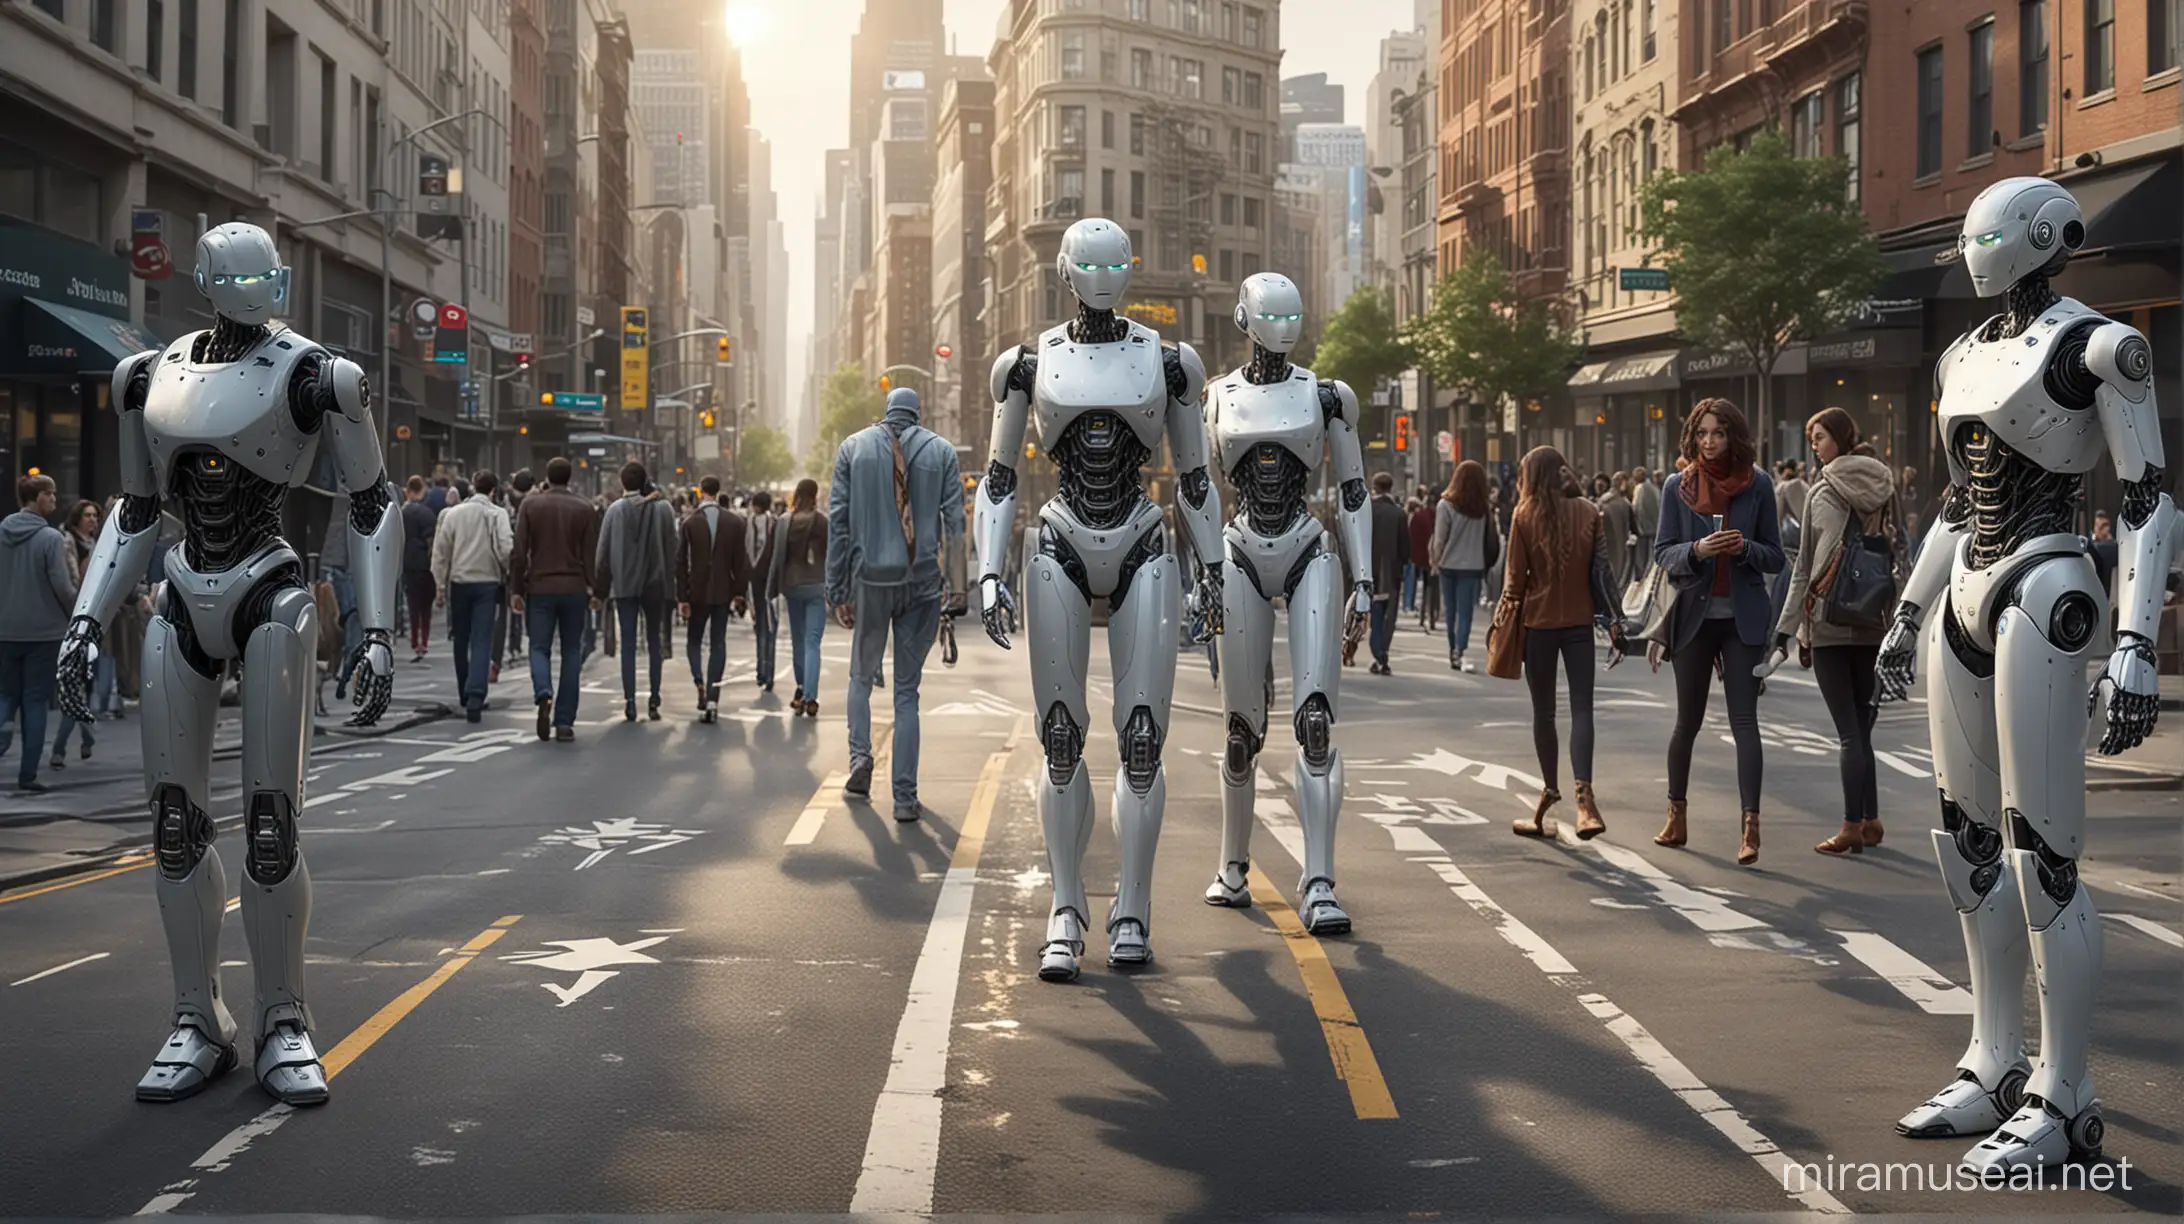 Futuristic Cityscape Humanoid Robots Fintech Apps and Autonomous Vehicles